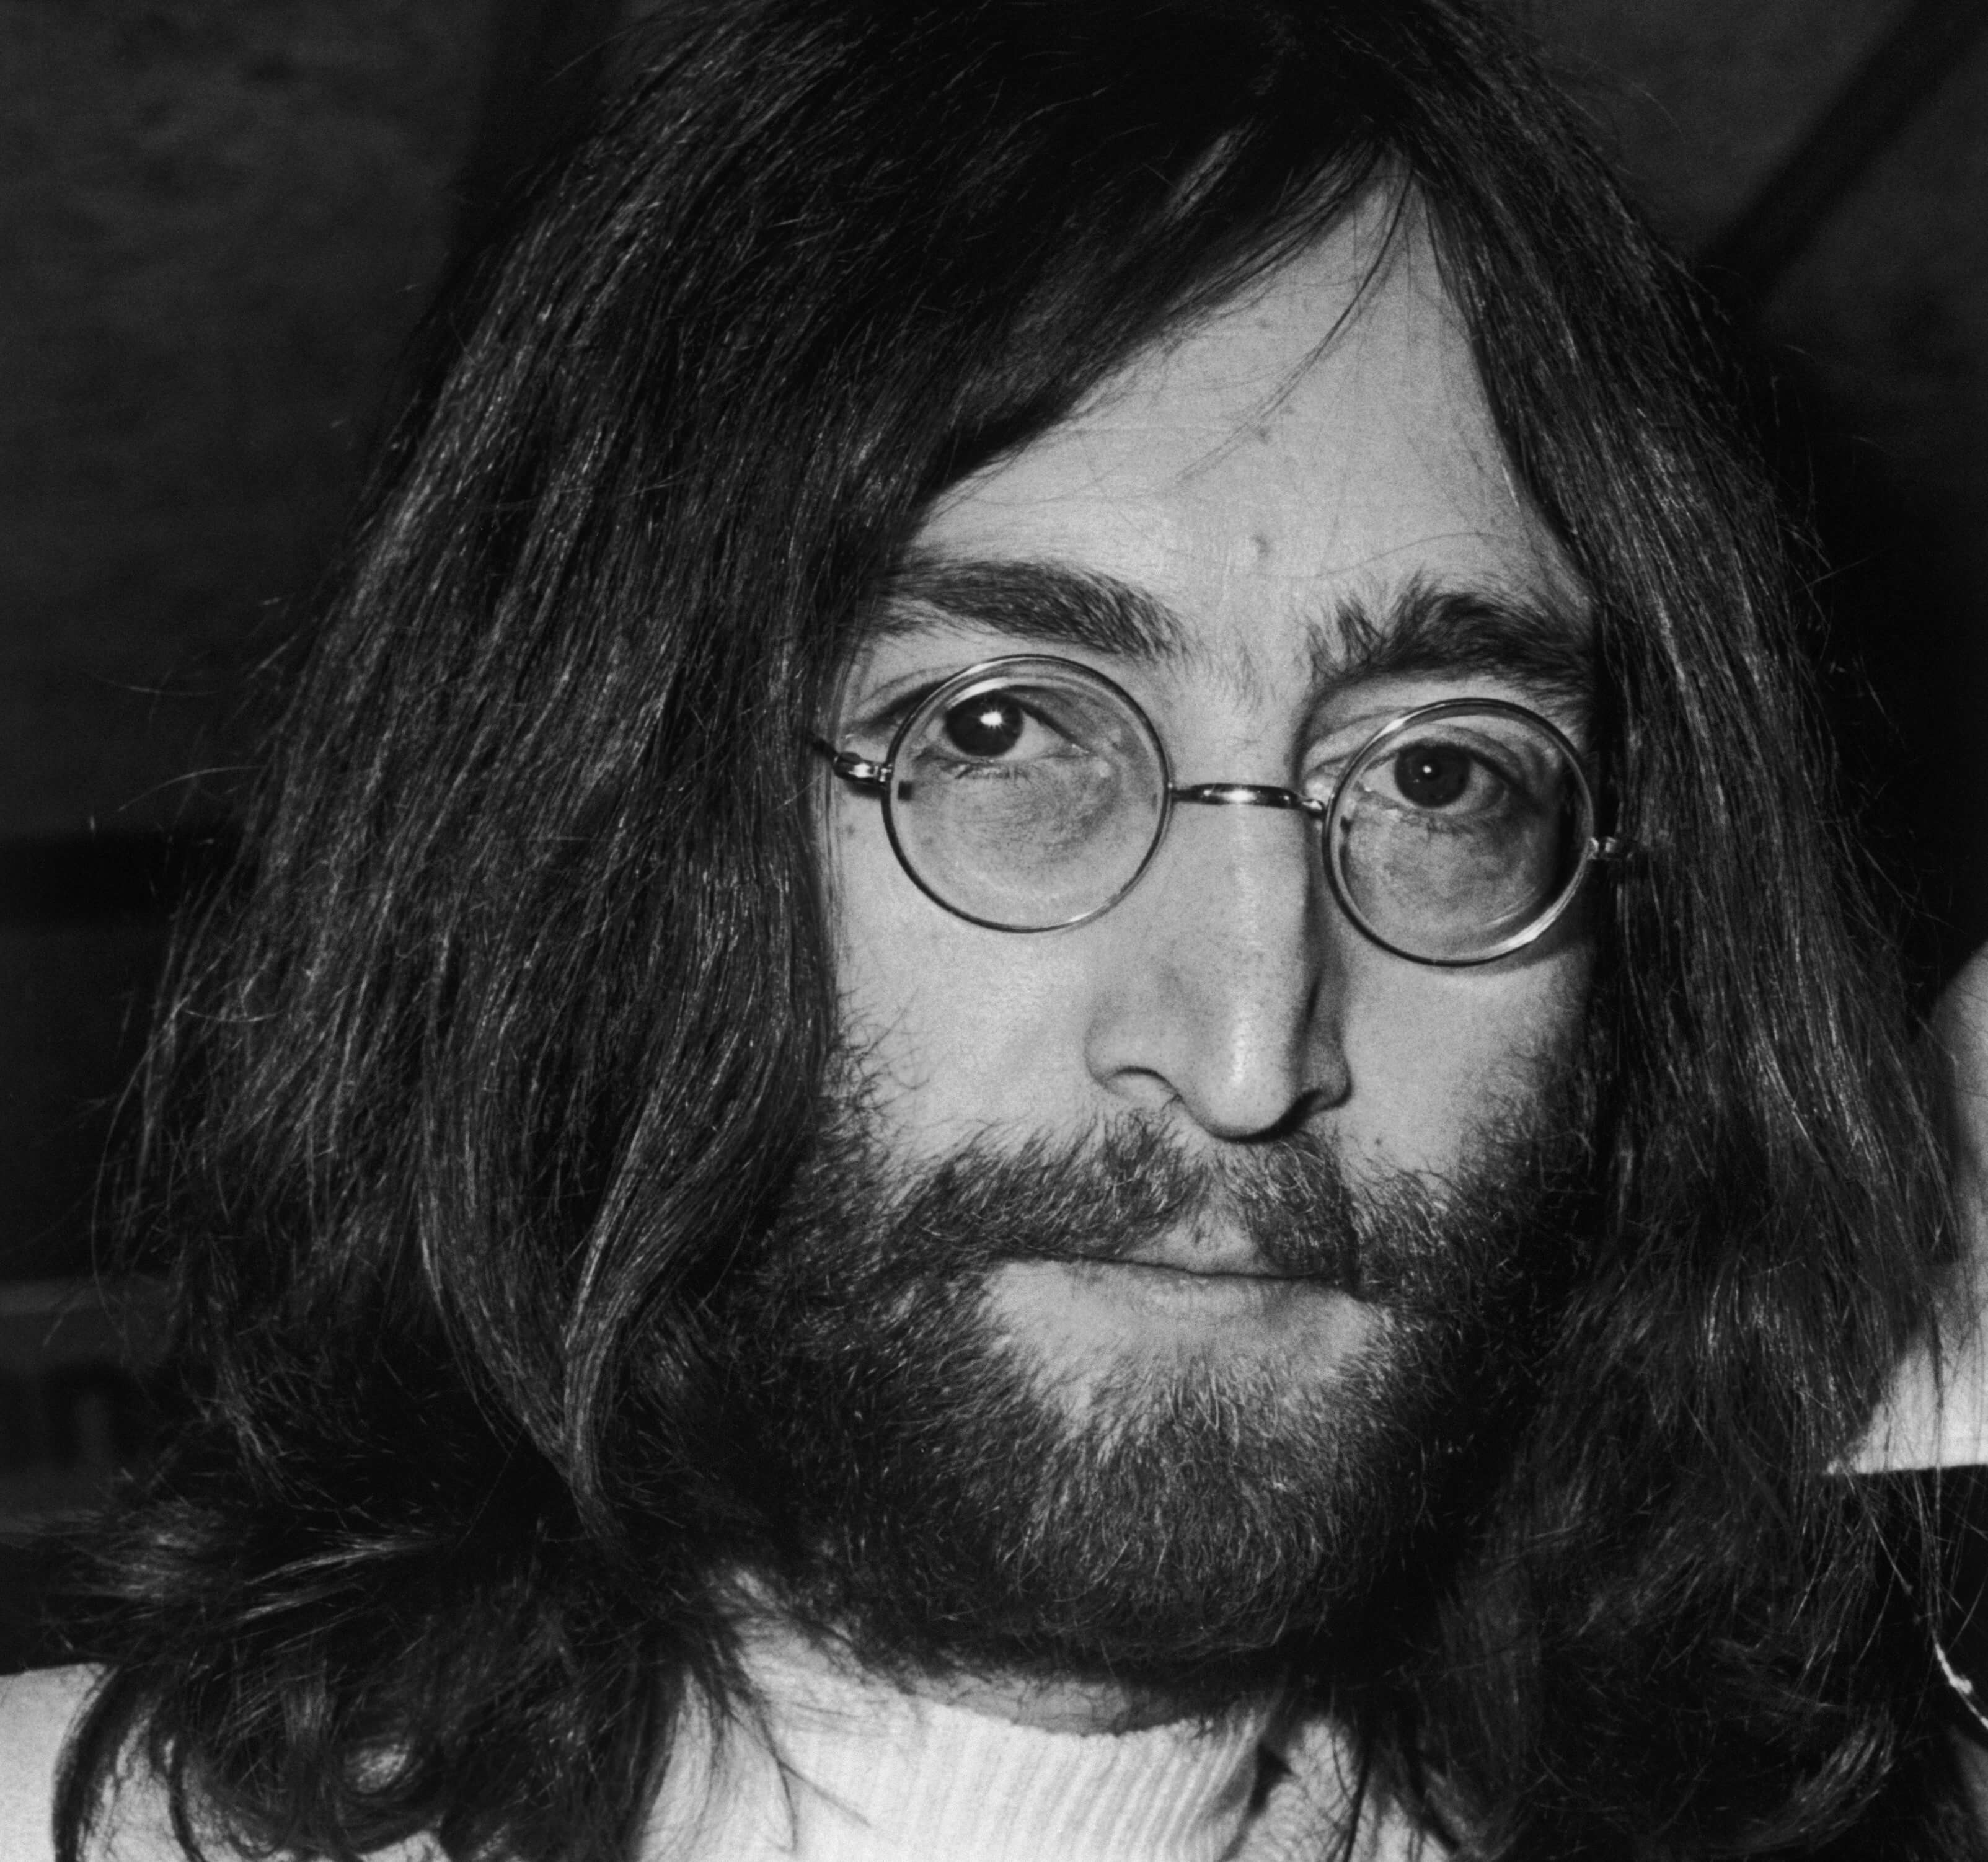 John Lennon with a beard